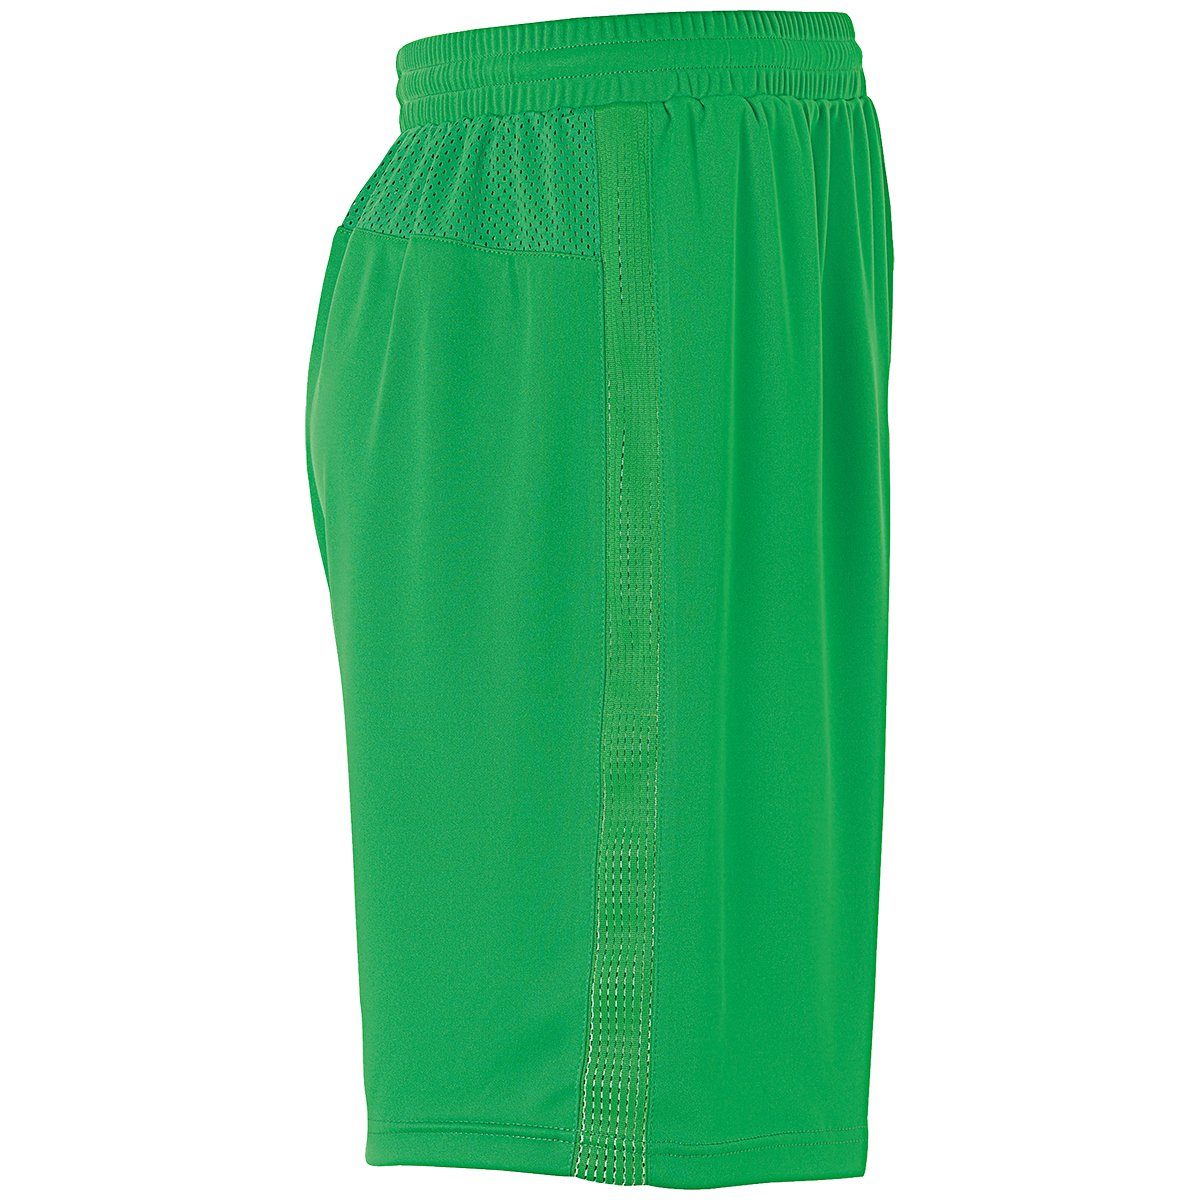 uhlsport Shorts uhlsport Shorts grün/weiß PERFORMANCE SHORTS